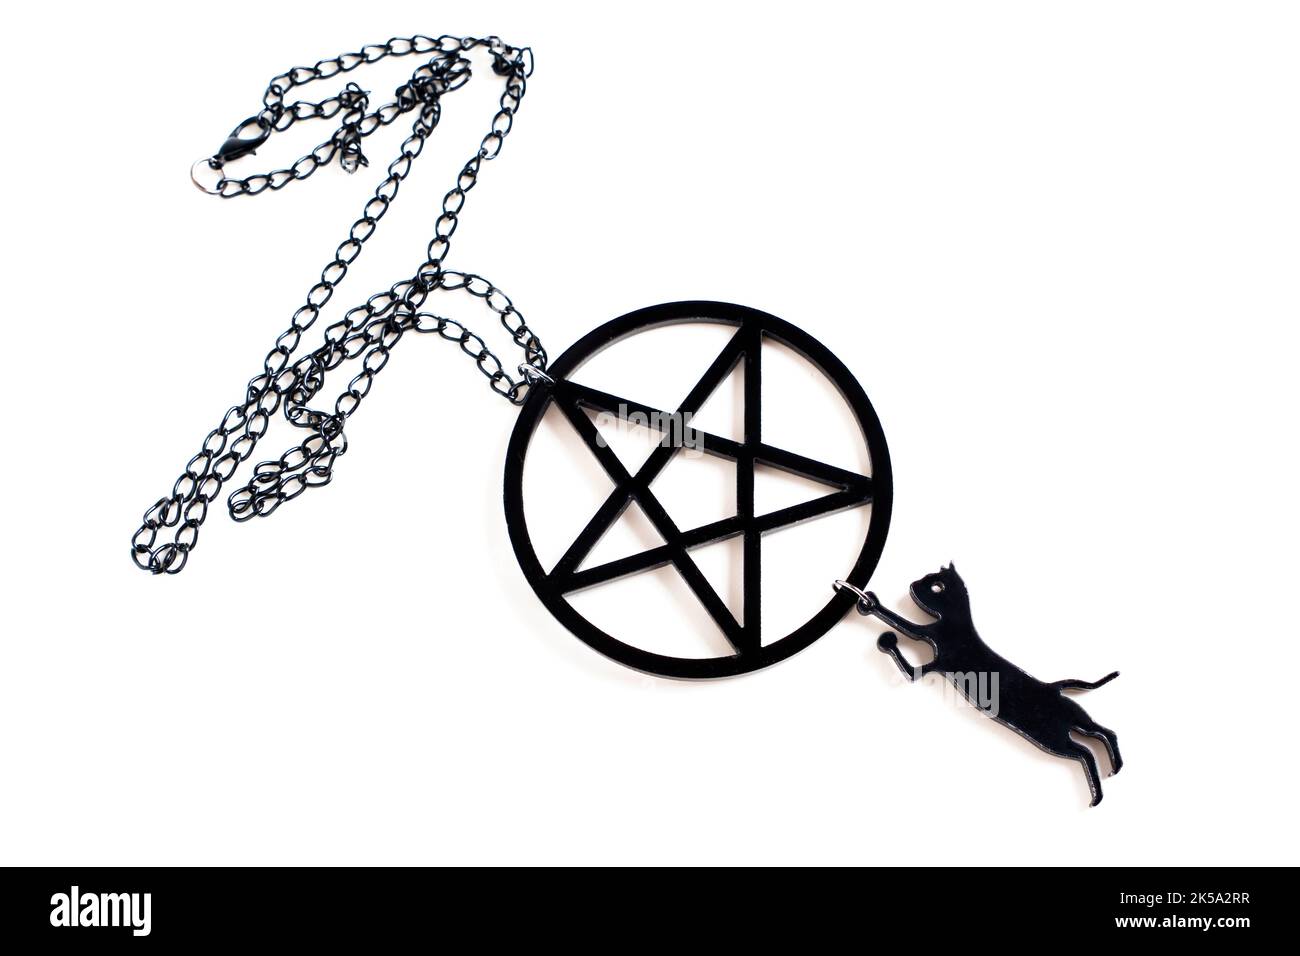 Kleine schwarze Katzenform, verbunden mit einer großen schwarzen Pentagramm-Kette, isoliert auf Weiß. Kreatives halloween Accessoire Konzept. Stockfoto